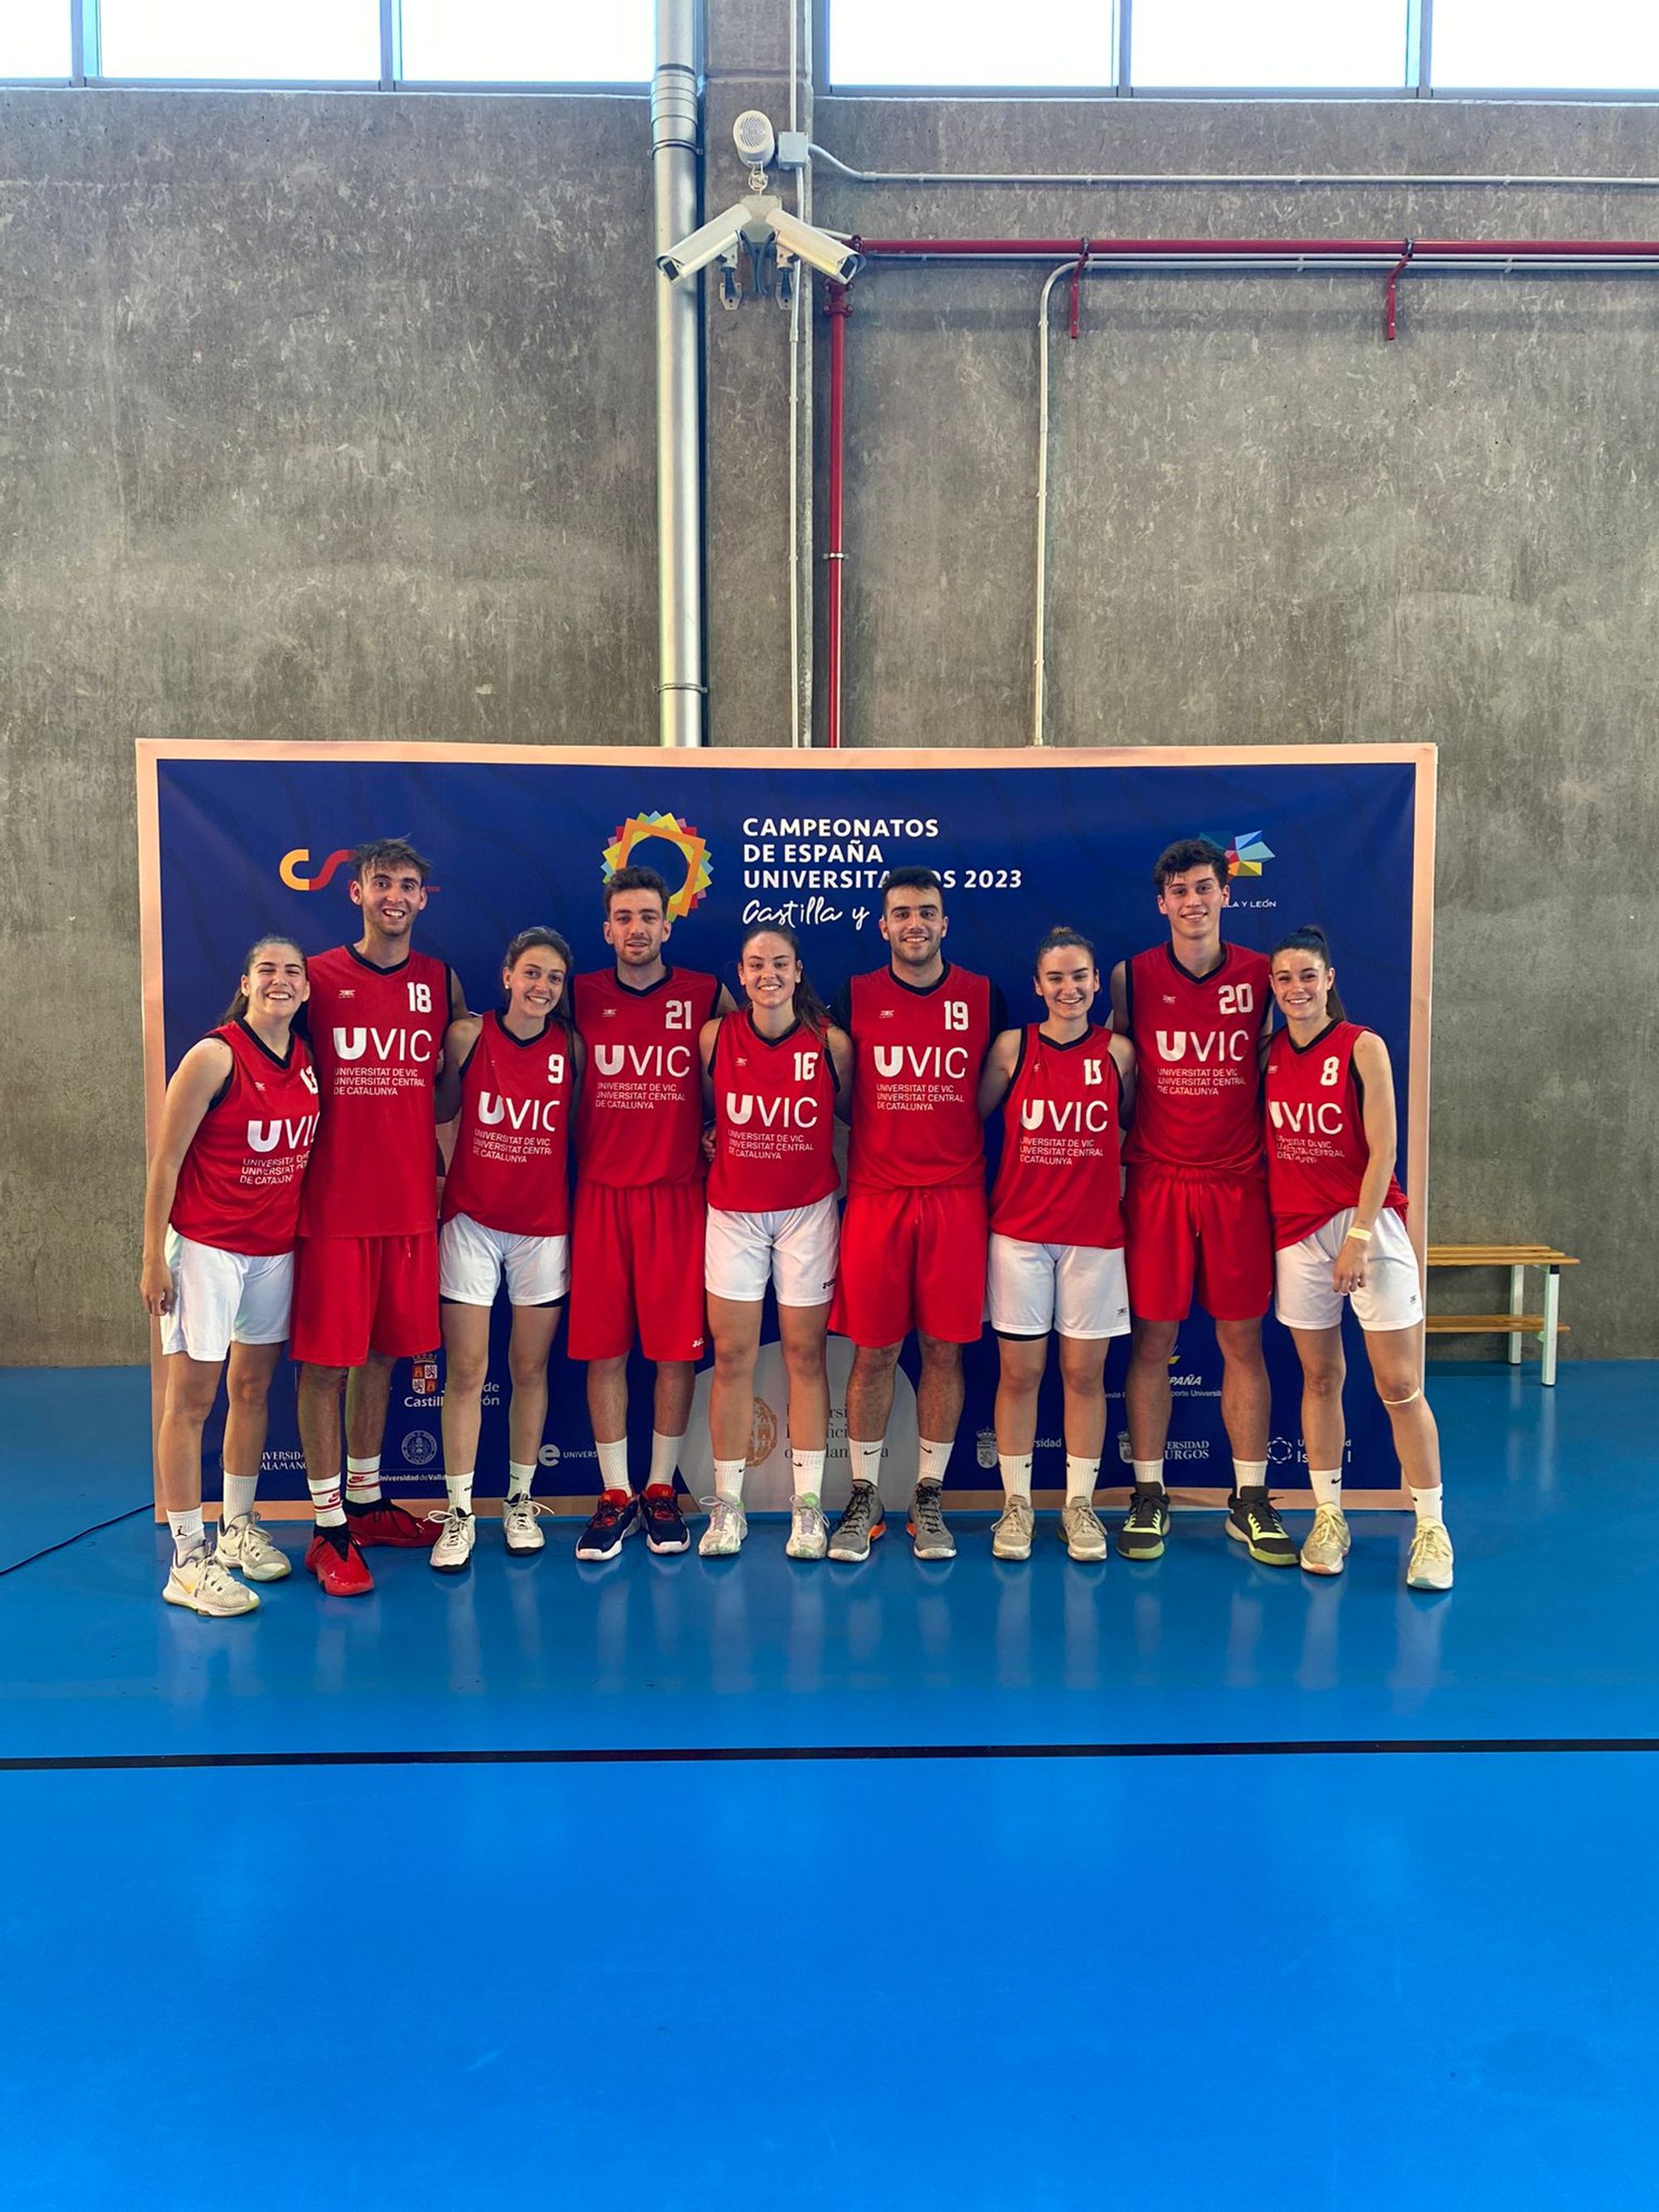 L’equip de bàsquet 3x3 femení guanya la medalla d’argent als Campionats d’Espanya Universitaris